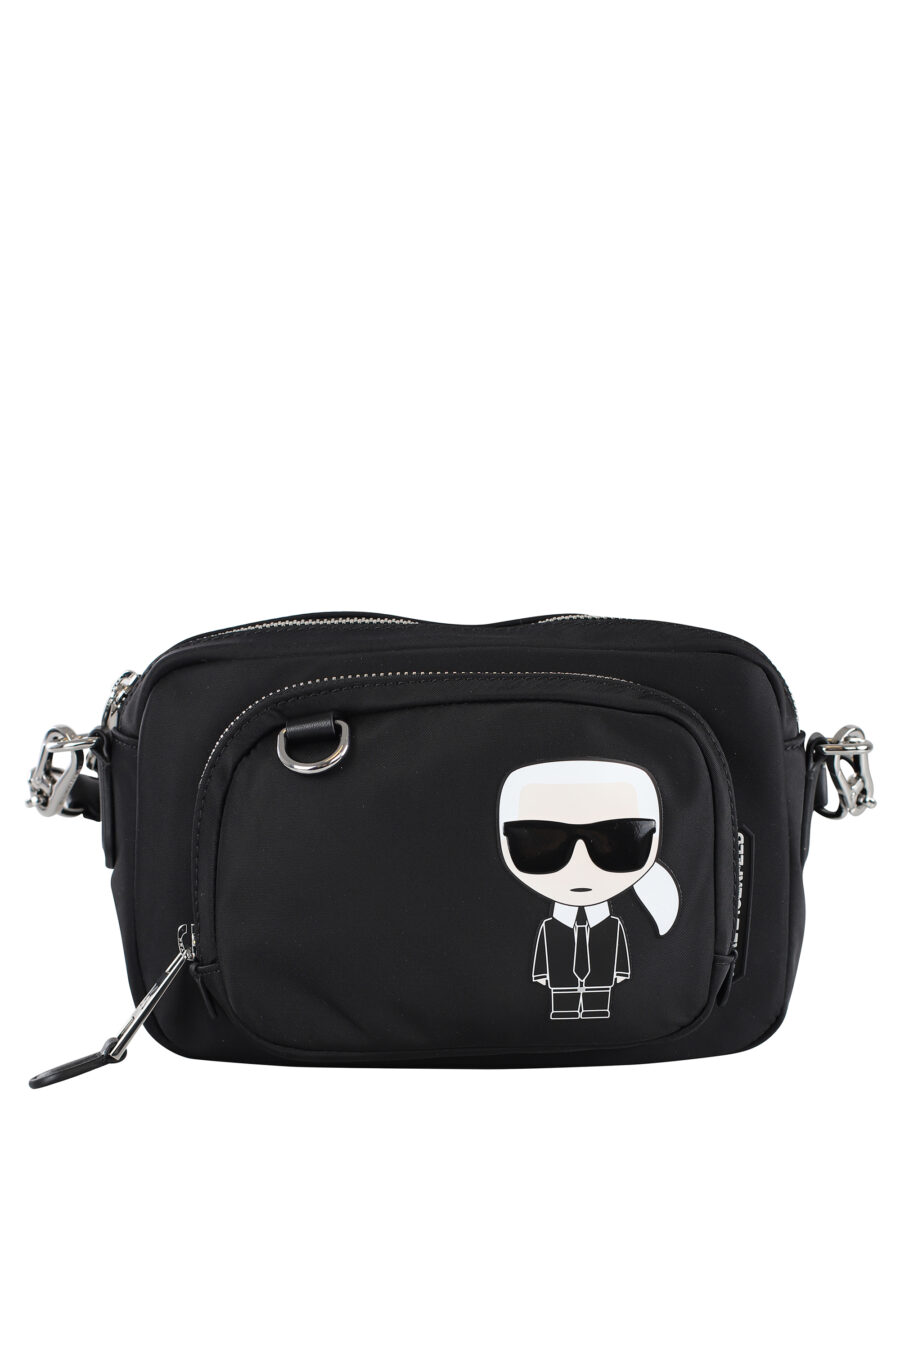 Black shoulder bag with optional maxilogo "karl" fanny pack - IMG 6992